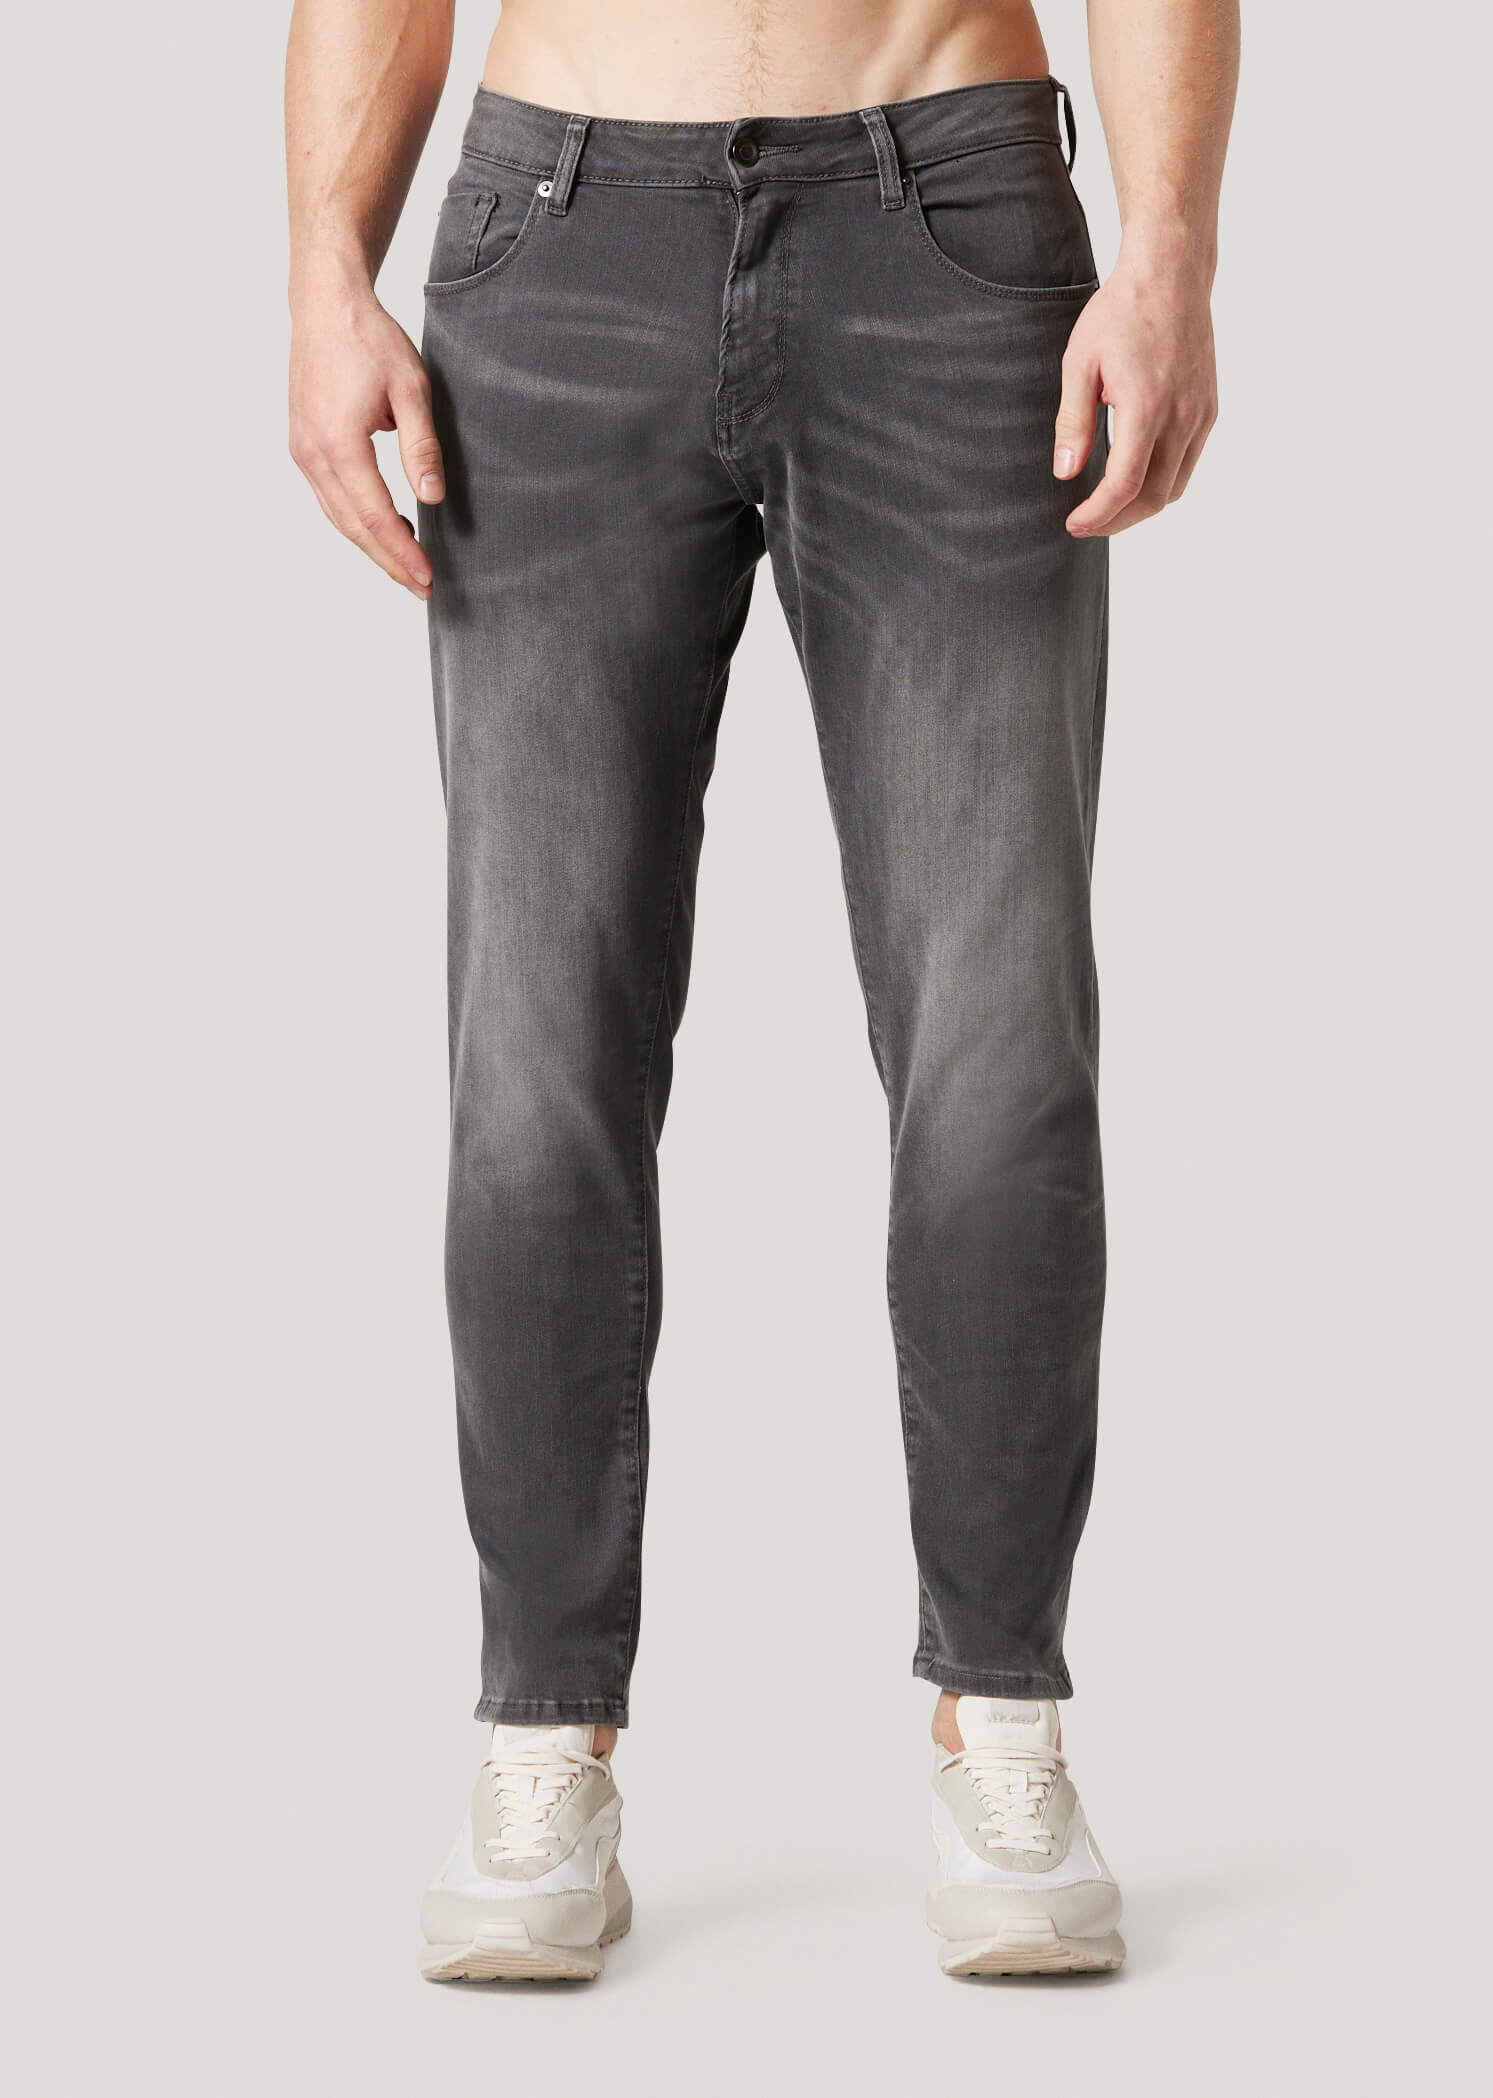 Spenlow 917 Grey Slim Fit Denim Jeans